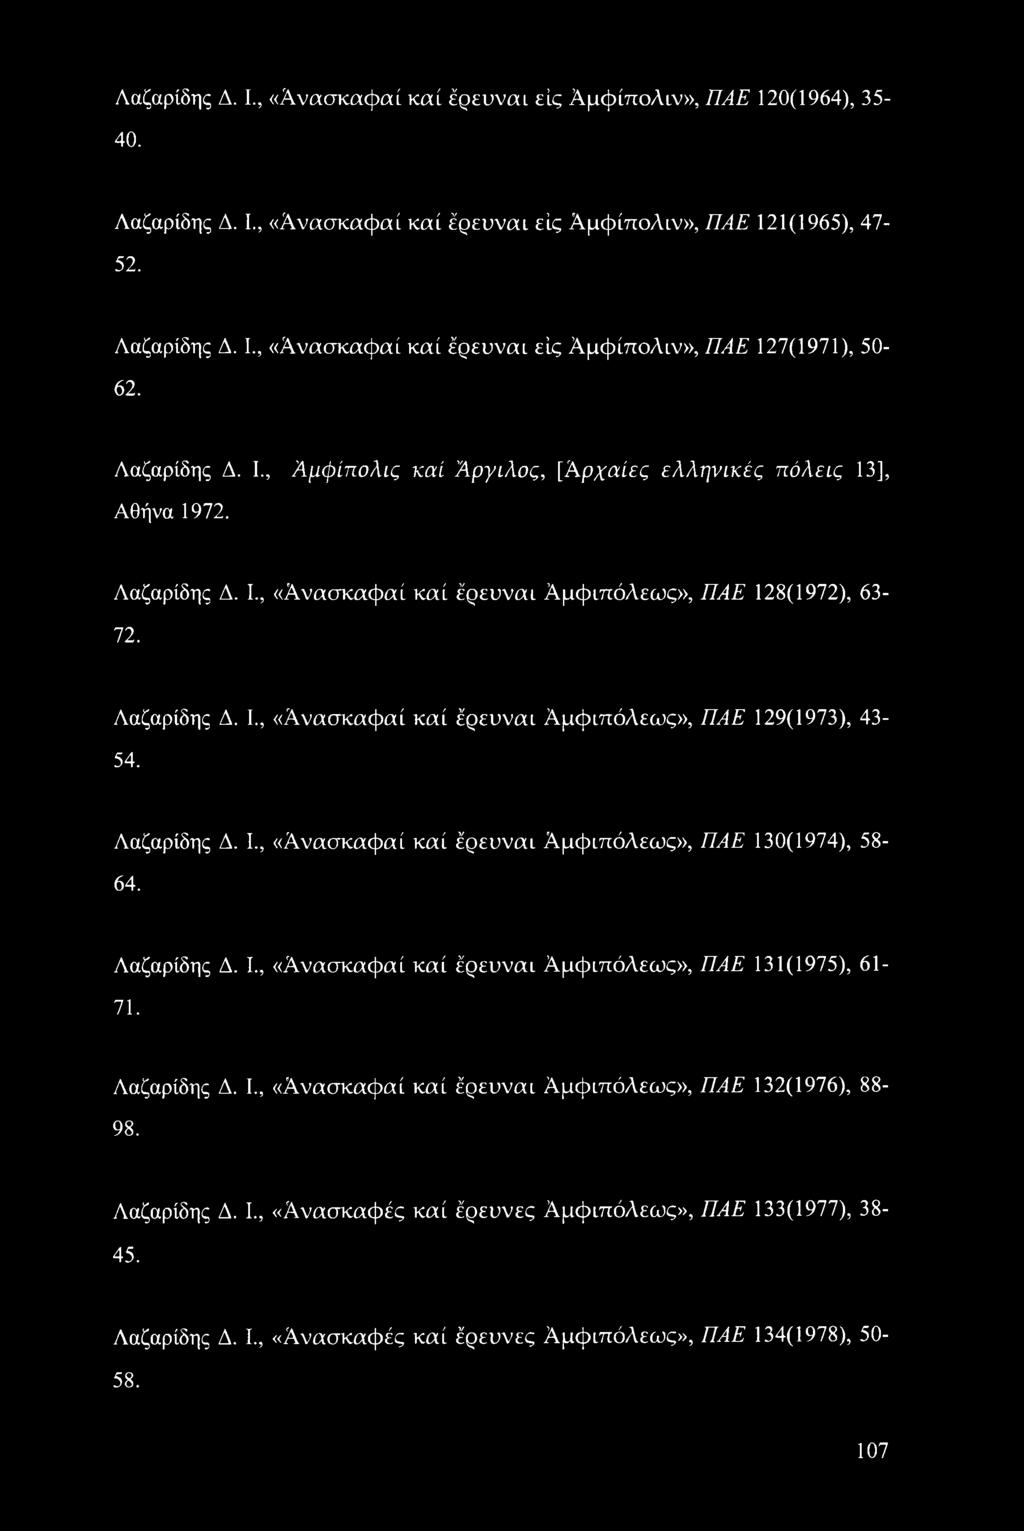 Λαζαρίδης Δ. I., «Ανασκαφαί καί έρευναι ΑμφιπόΛεως», ΠΑΕ 130(1974), 58-64. Λαζαρίδης Δ. I., «Ανασκαφαί καί έρευναι ΑμφιπόΛεως», ΠΑΕ 131(1975), 61-71. Λαζαρίδης Δ. I., «Ανασκαφαί καί έρευναι ΑμφιπόΛεως», ΠΑΕ 132(1976), 88-98.